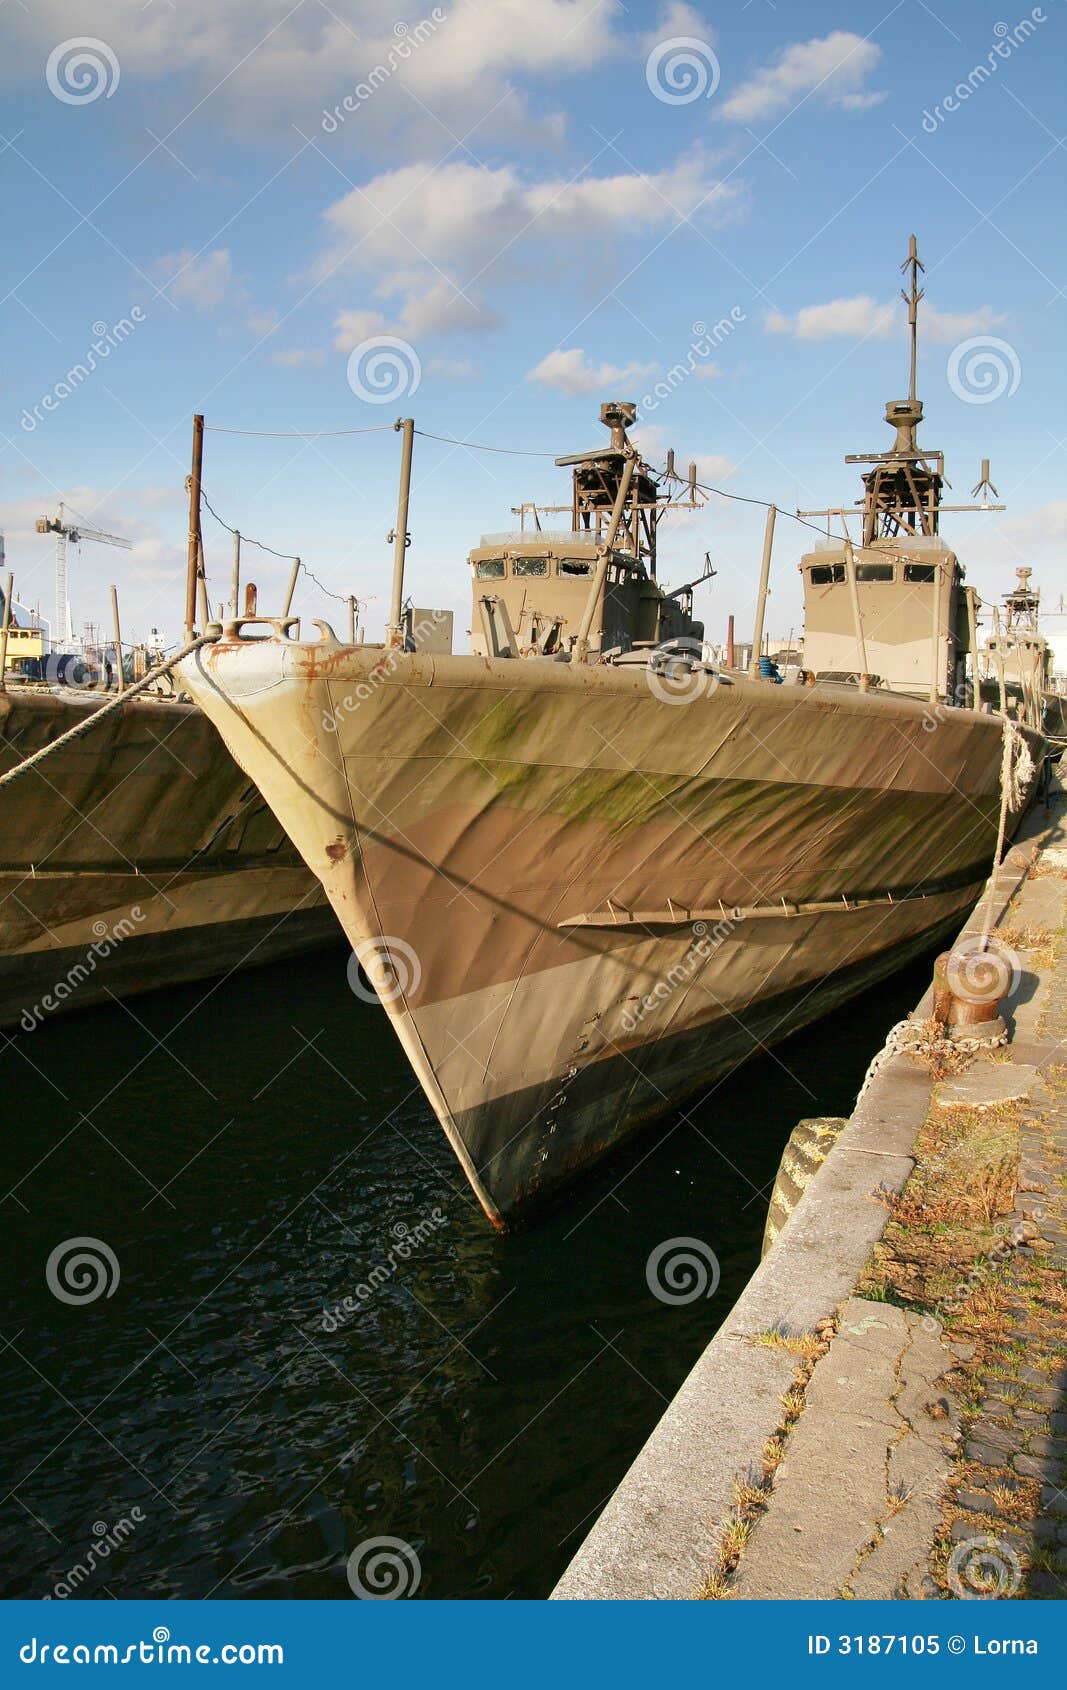 obsolete navy ships